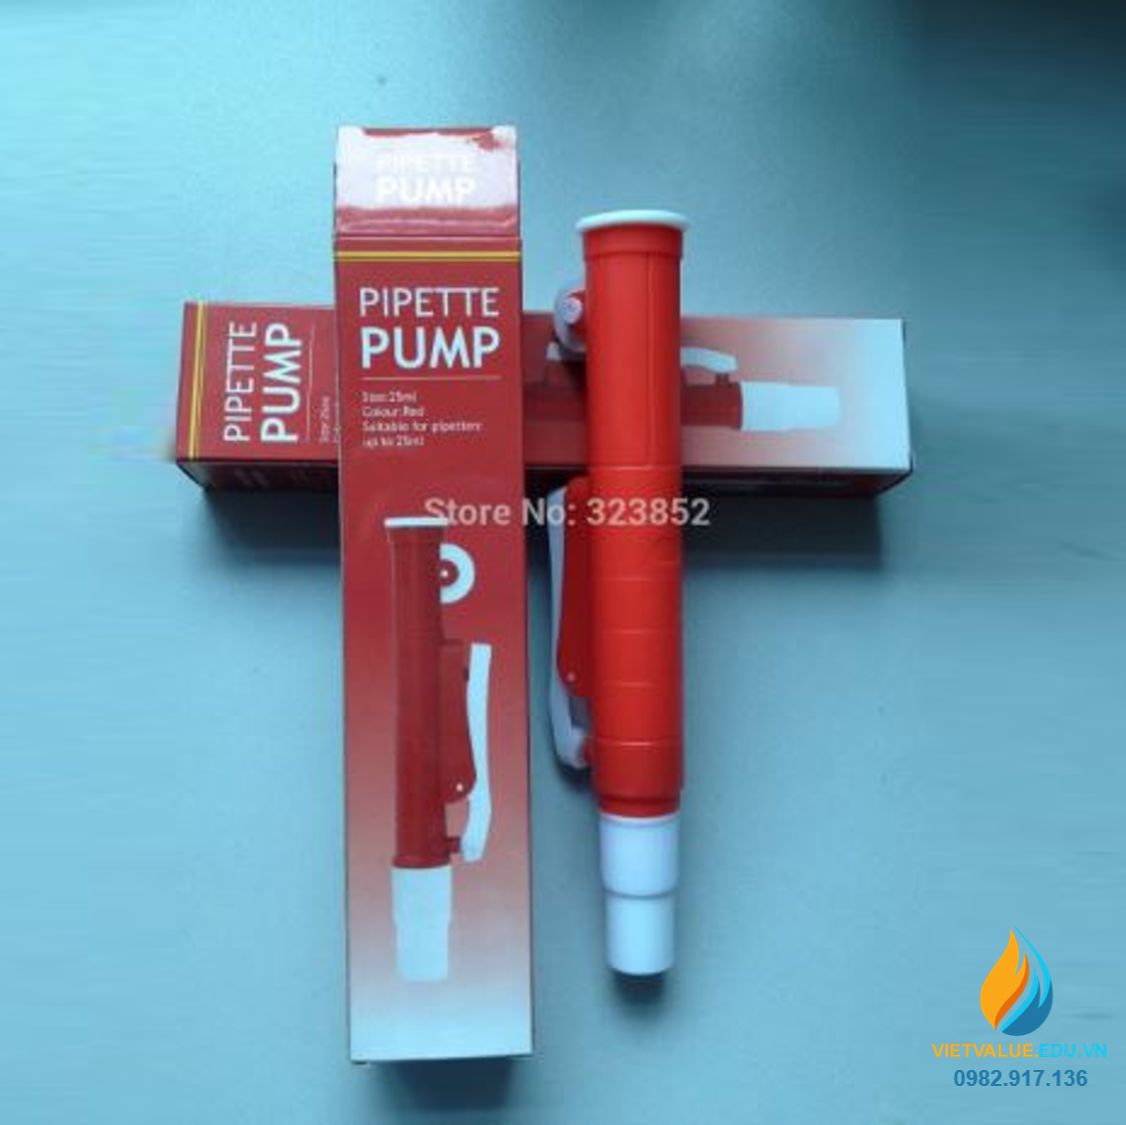 Bơm trợ cho pipet - Pipet pump, màu đỏ, loại 25ml